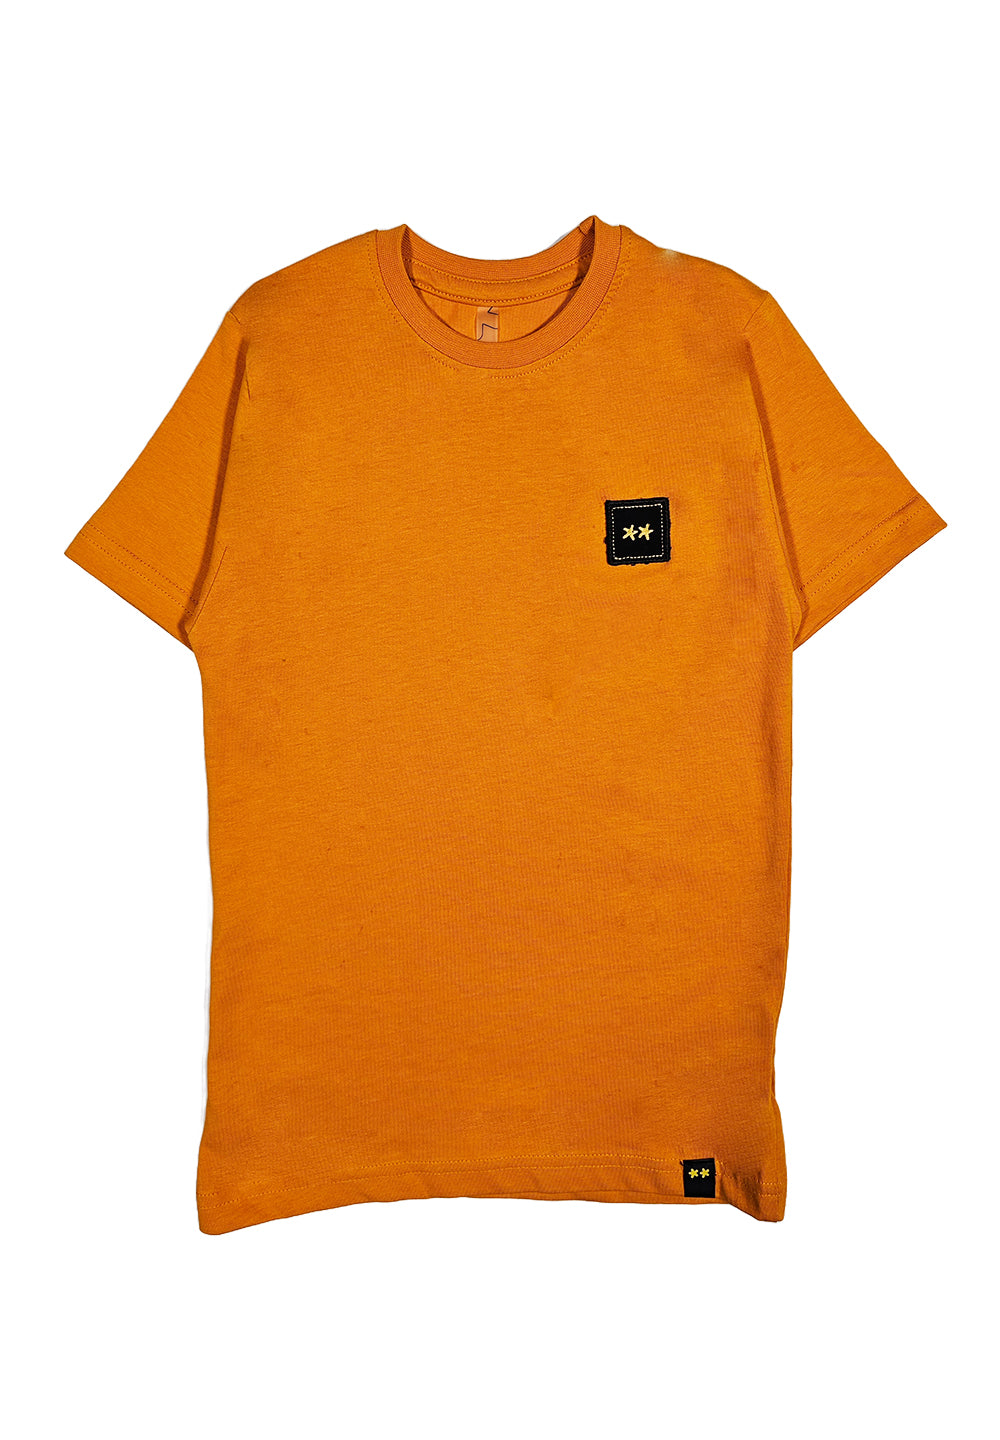 T-shirt arancione per bambino - Primamoda kids